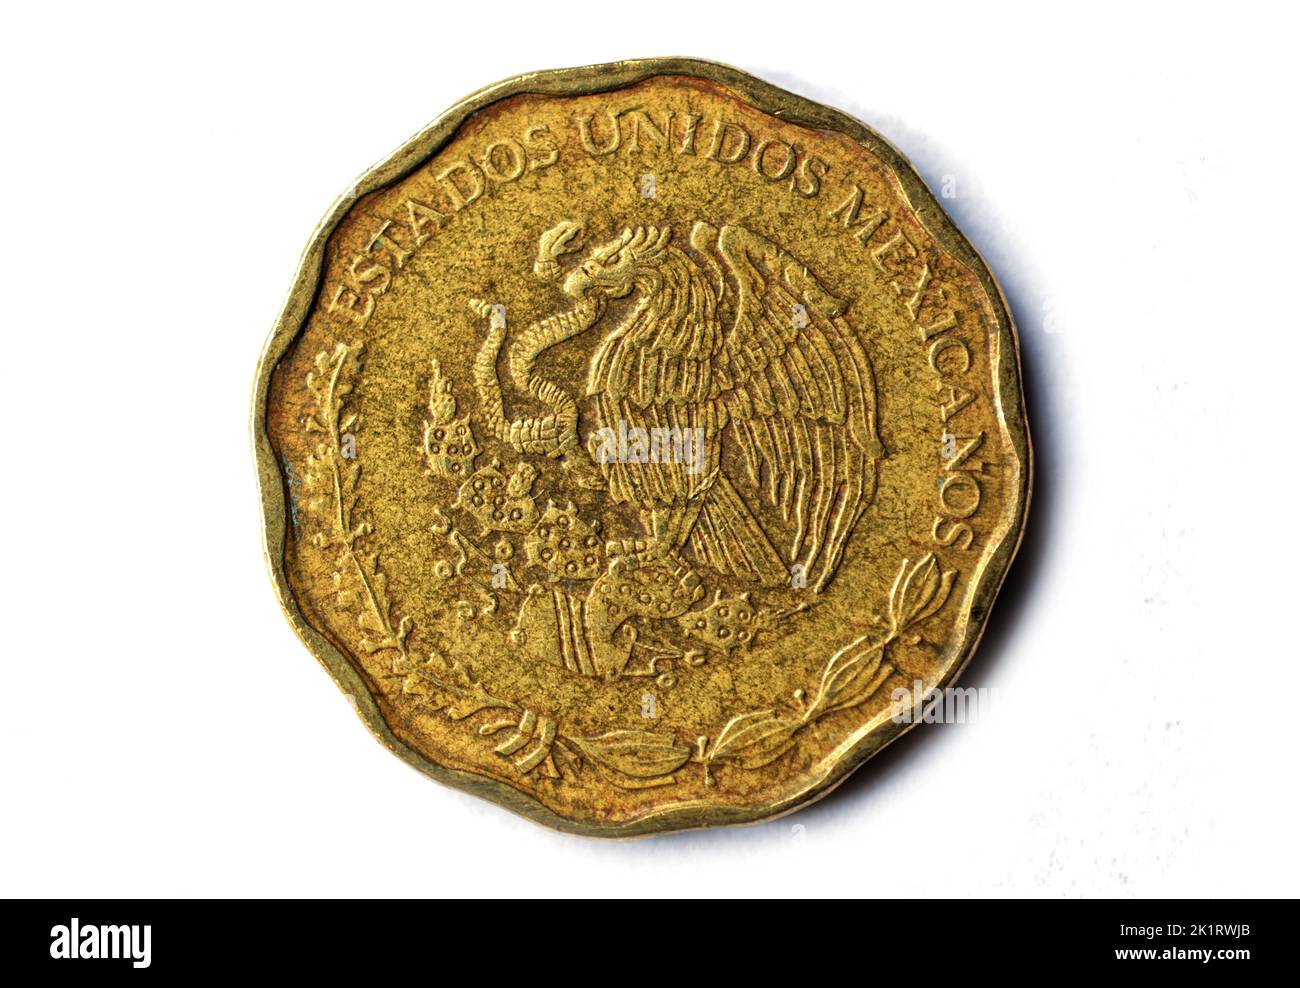 Photo coins Mexico,  2004,50 Centavos, Stock Photo